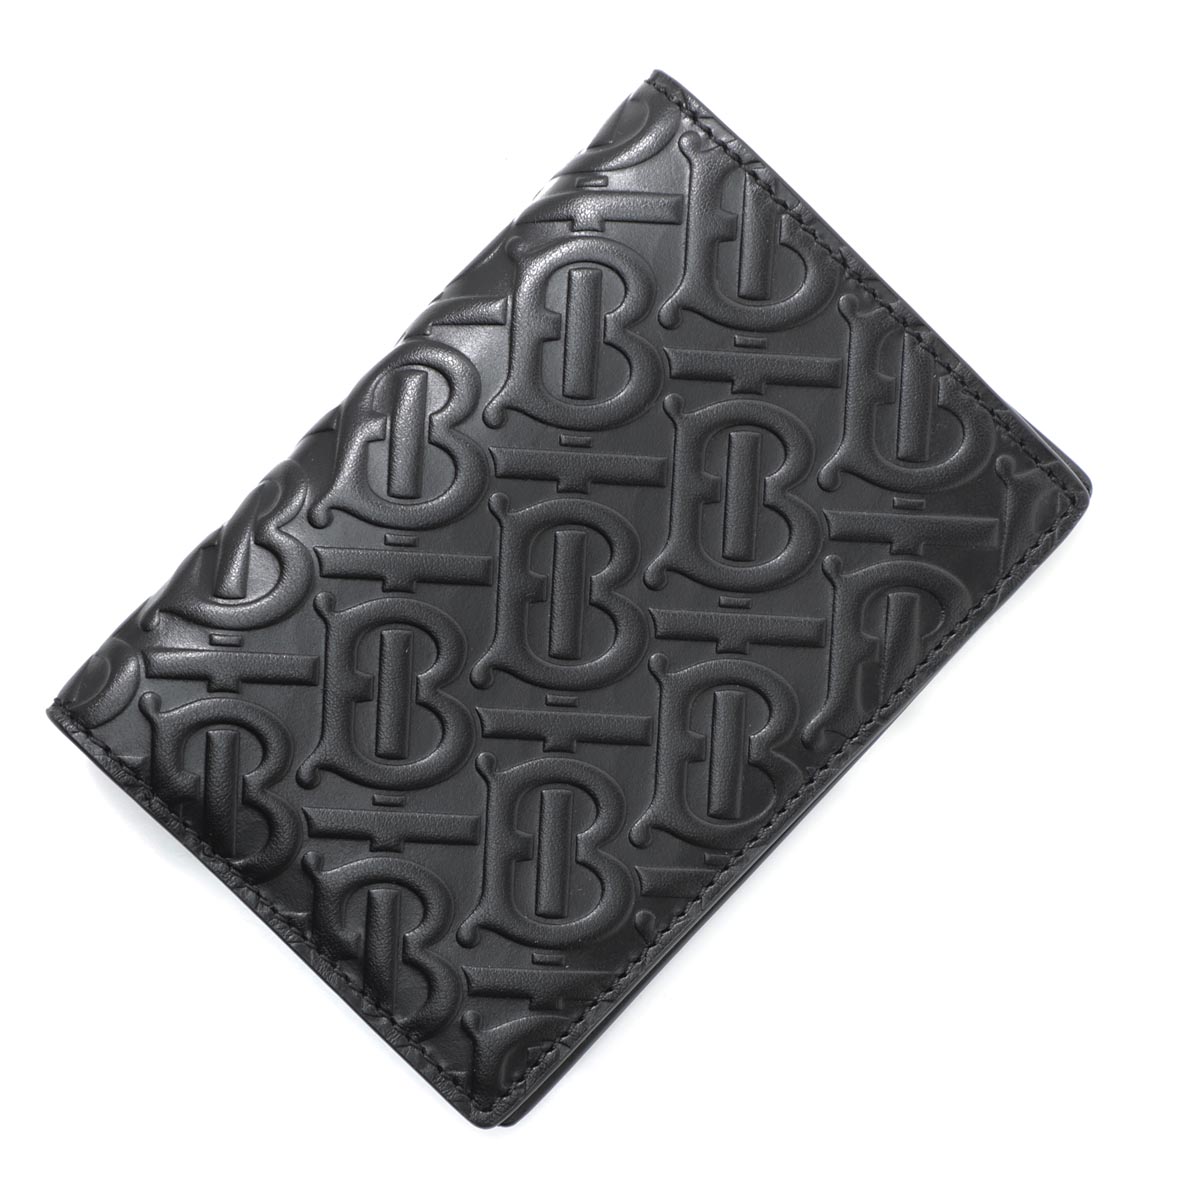 バーバリー 旅行用品 Black Burberry パスポートケース パスポートホルダー ブラック メンズ ブラック Black Monogrammed Leather あす楽対応 関東 返品送料無料 ラッピング無料 モダンブルー店 送料無料 バーバリー Burberry パスポートケース